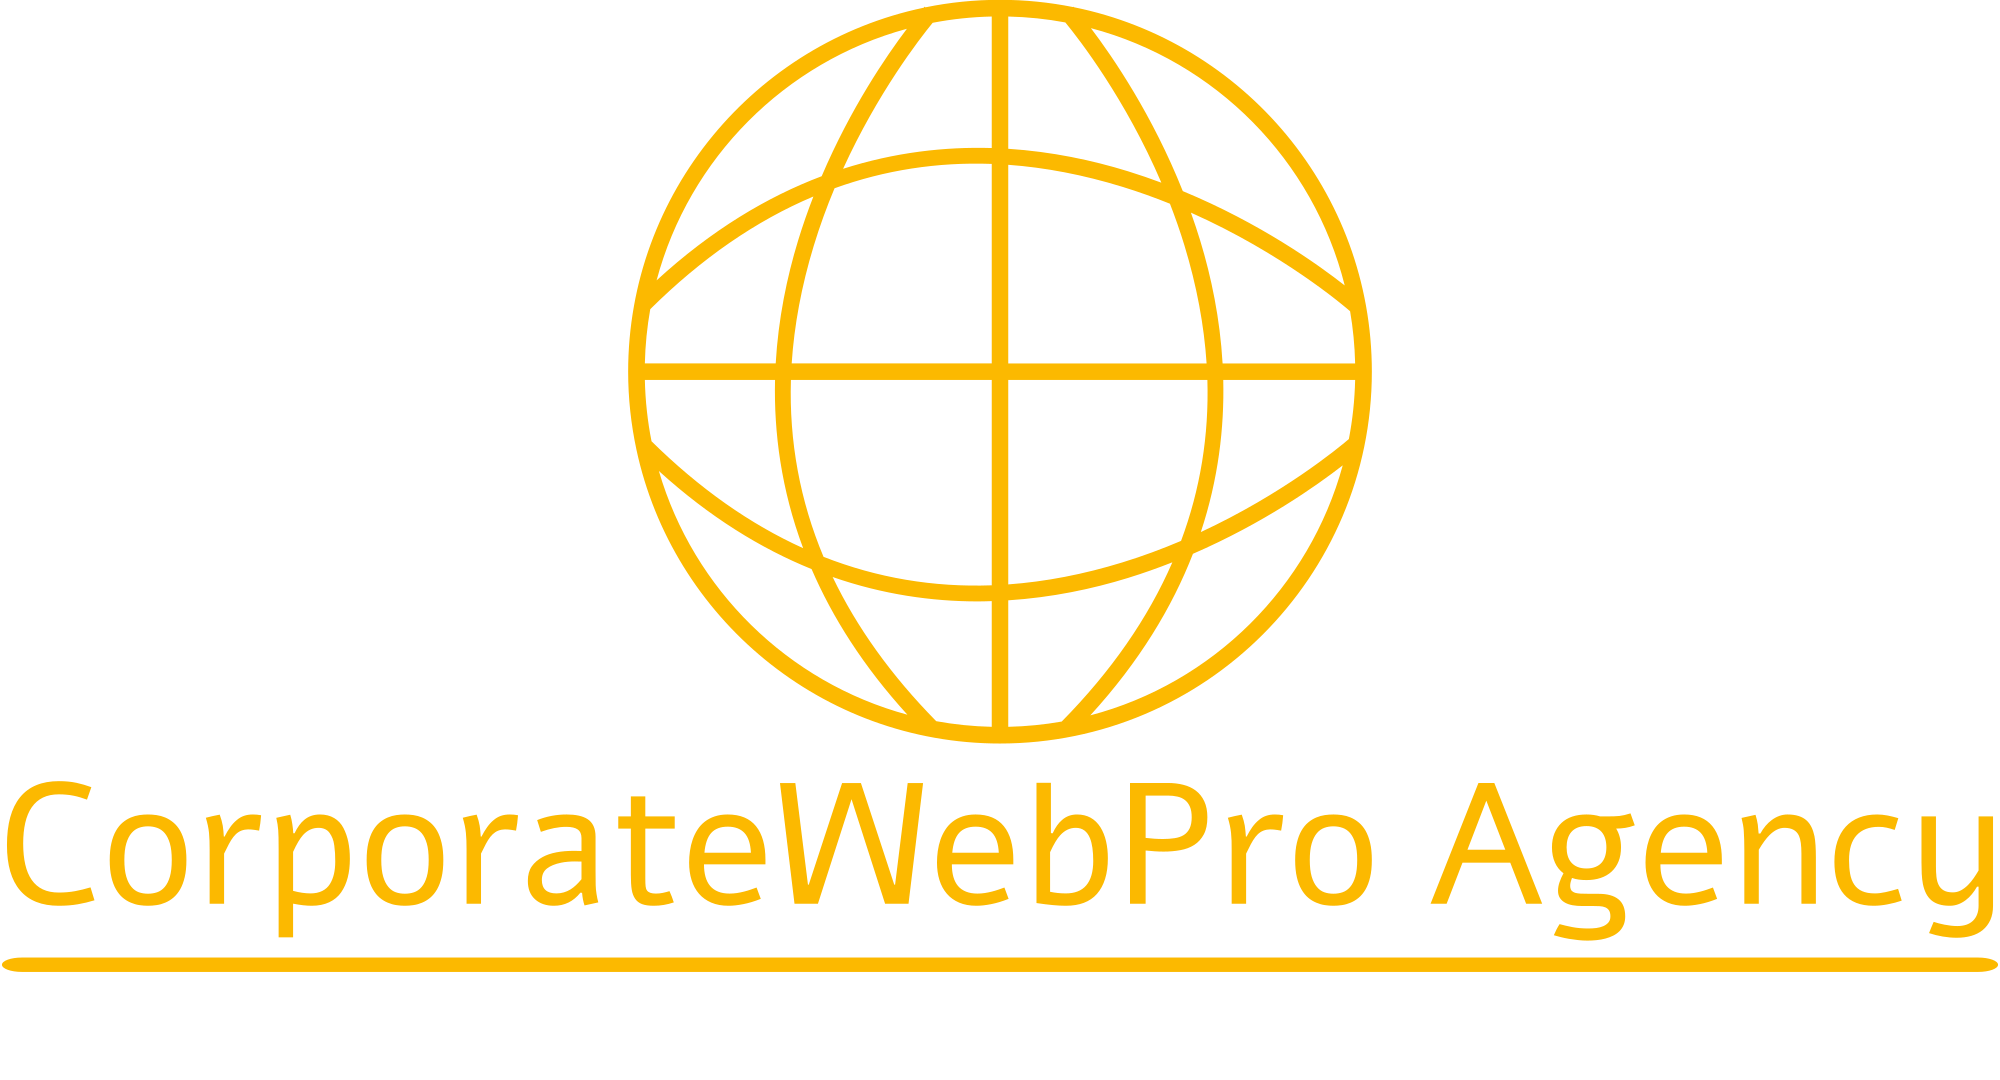 CorporateWebPro Marketing Agency